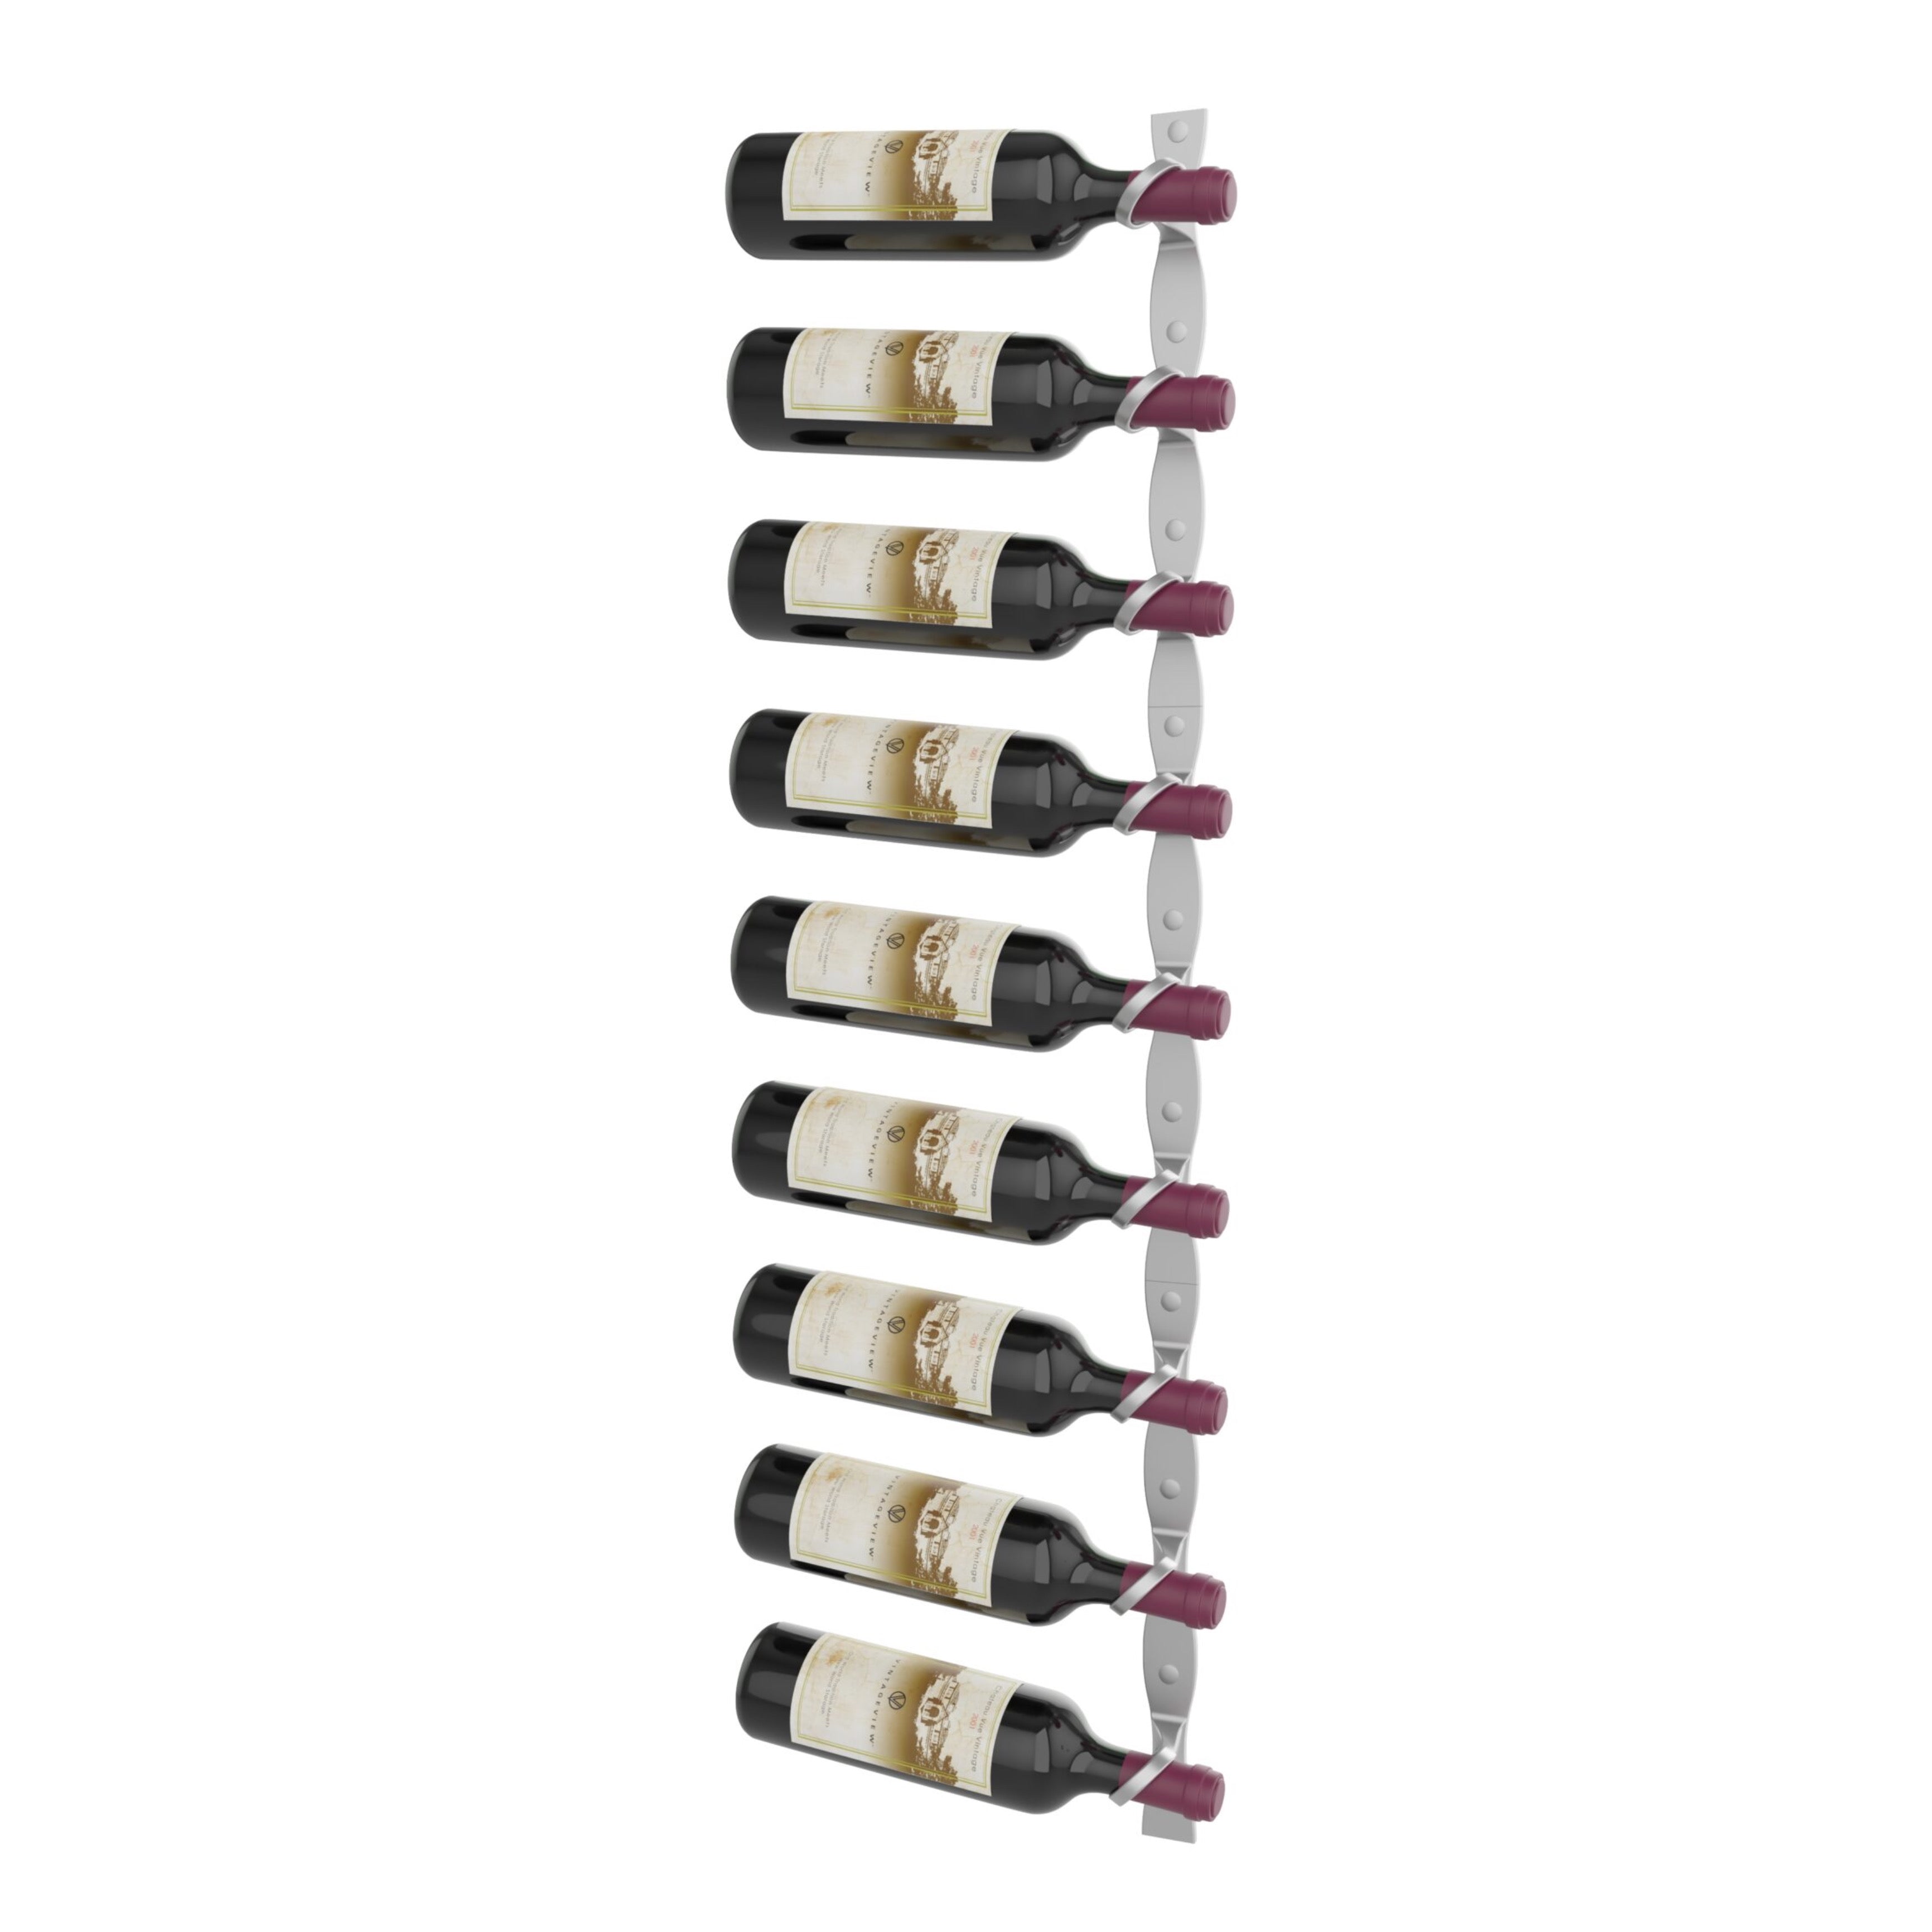 helix single 45 wall mounted metal wine rack cool grey